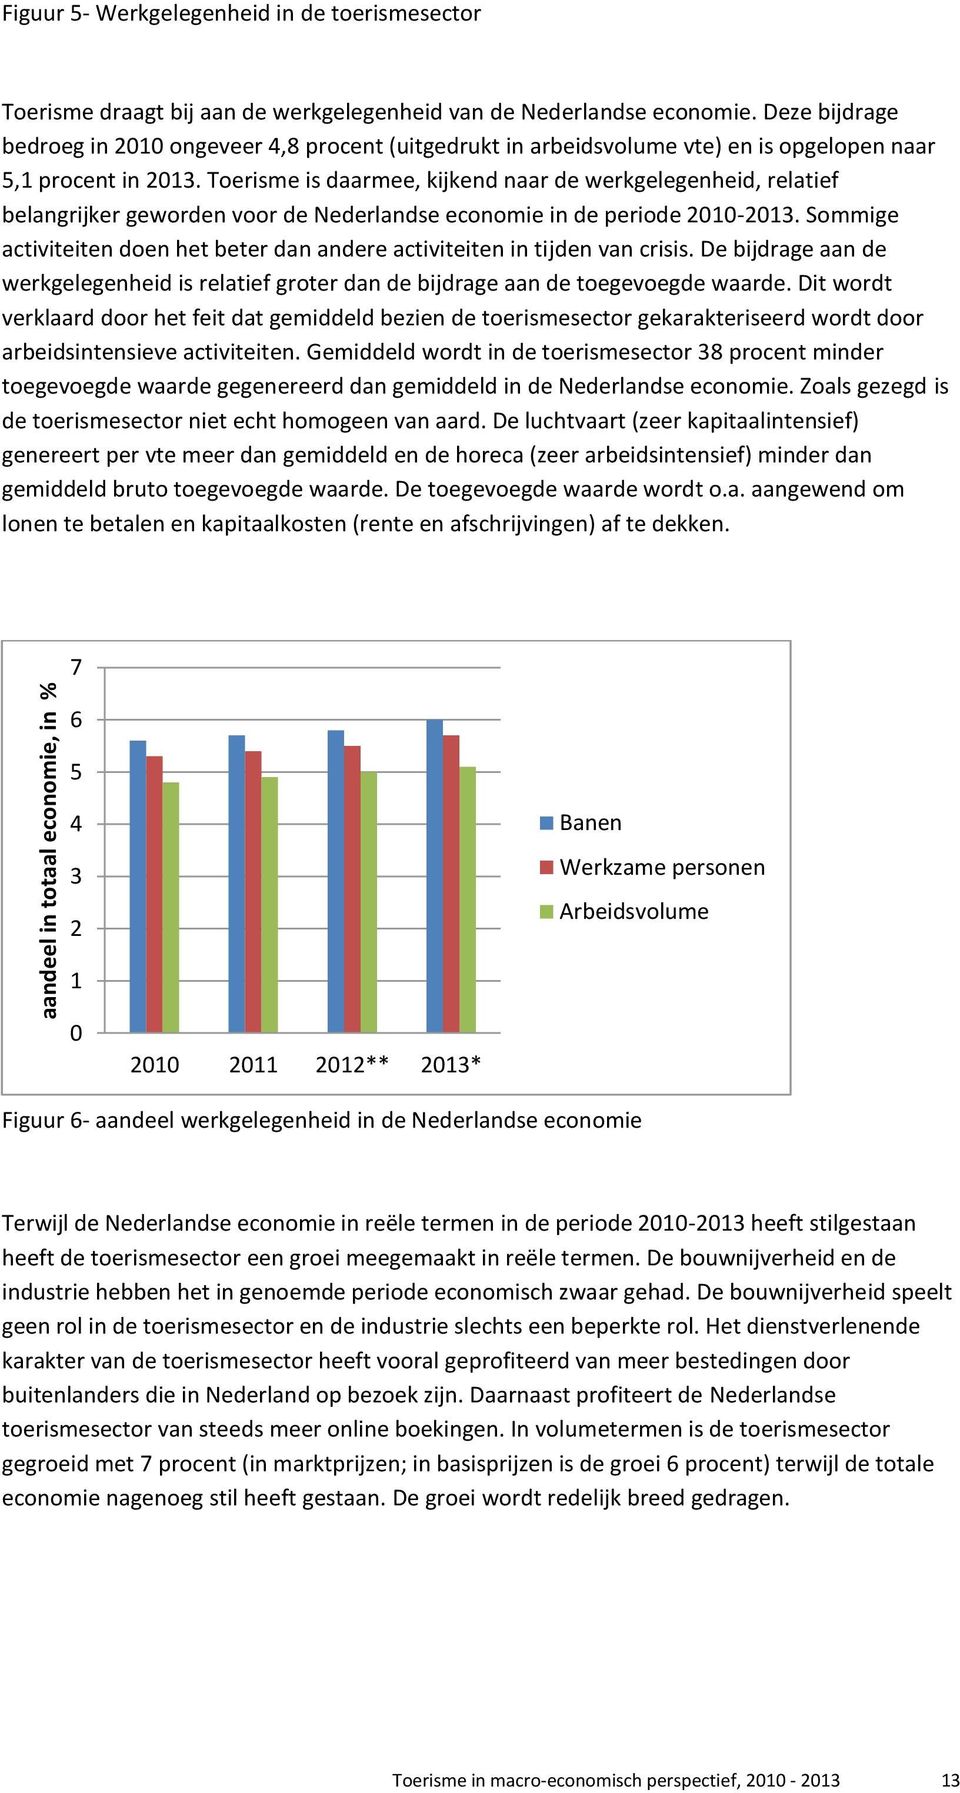 Toerisme is daarmee, kijkend naar de werkgelegenheid, relatief belangrijker geworden voor de Nederlandse economie in de periode 2010-2013.